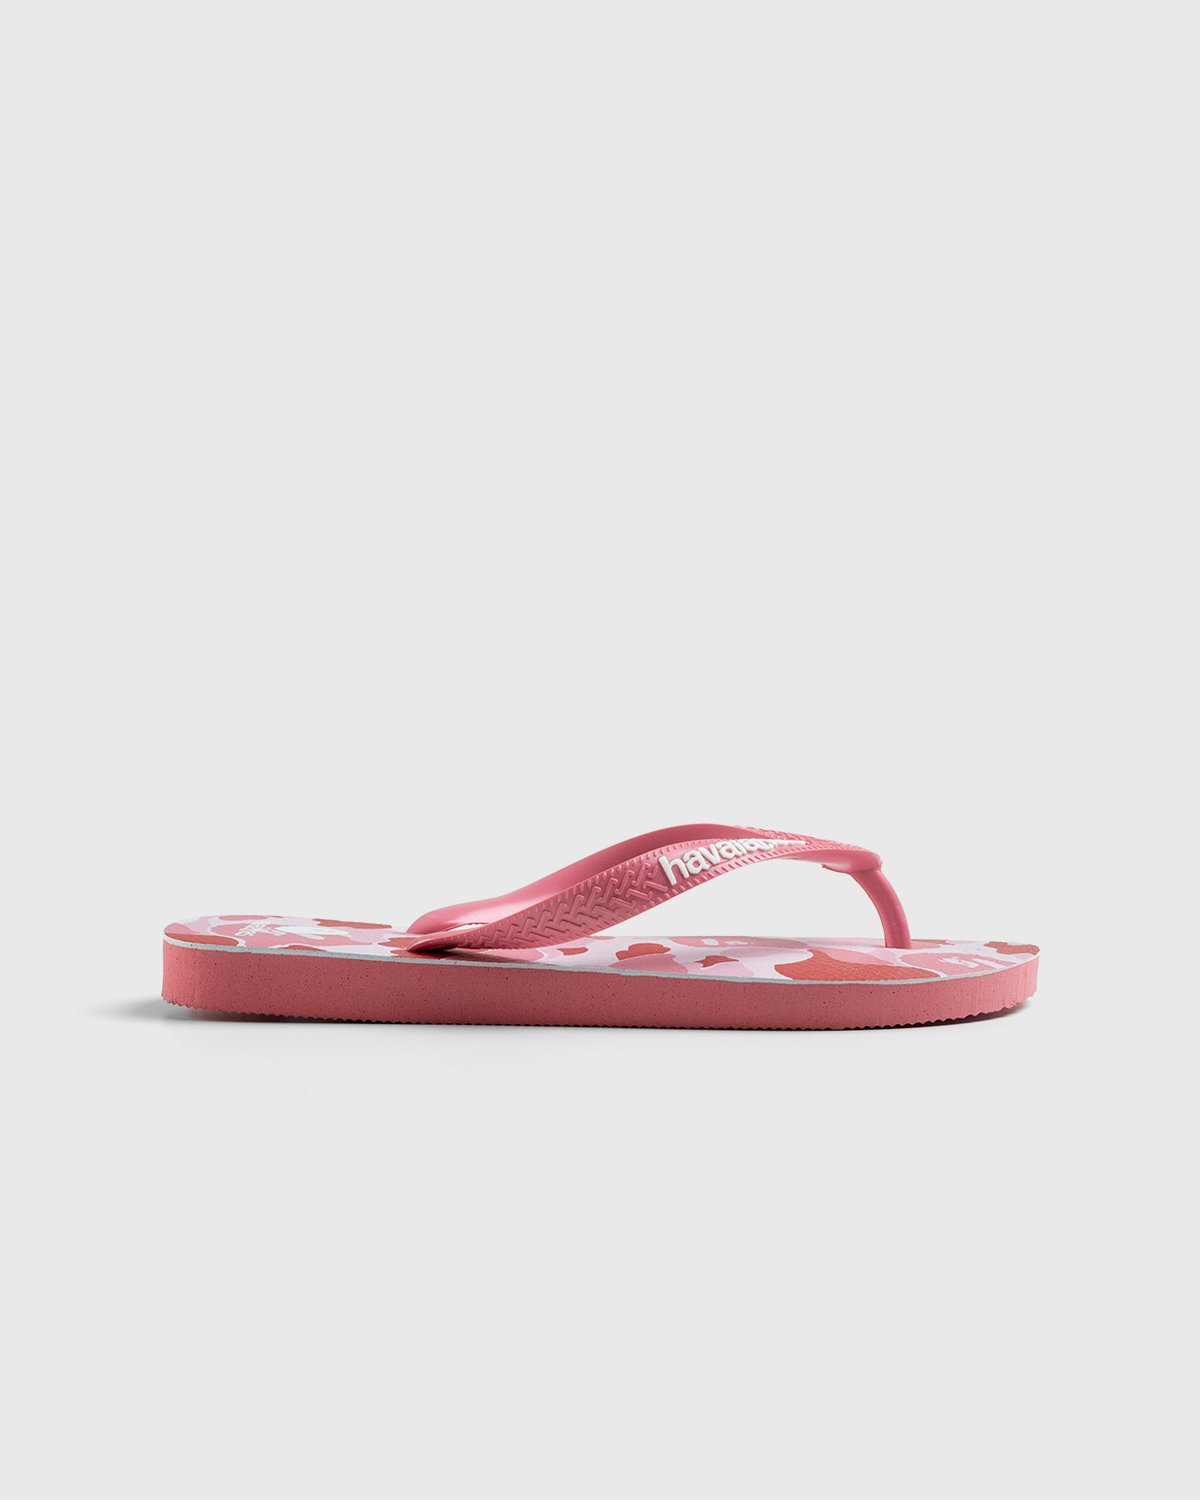 BAPE - Top Pink - Footwear - Pink - Image 1